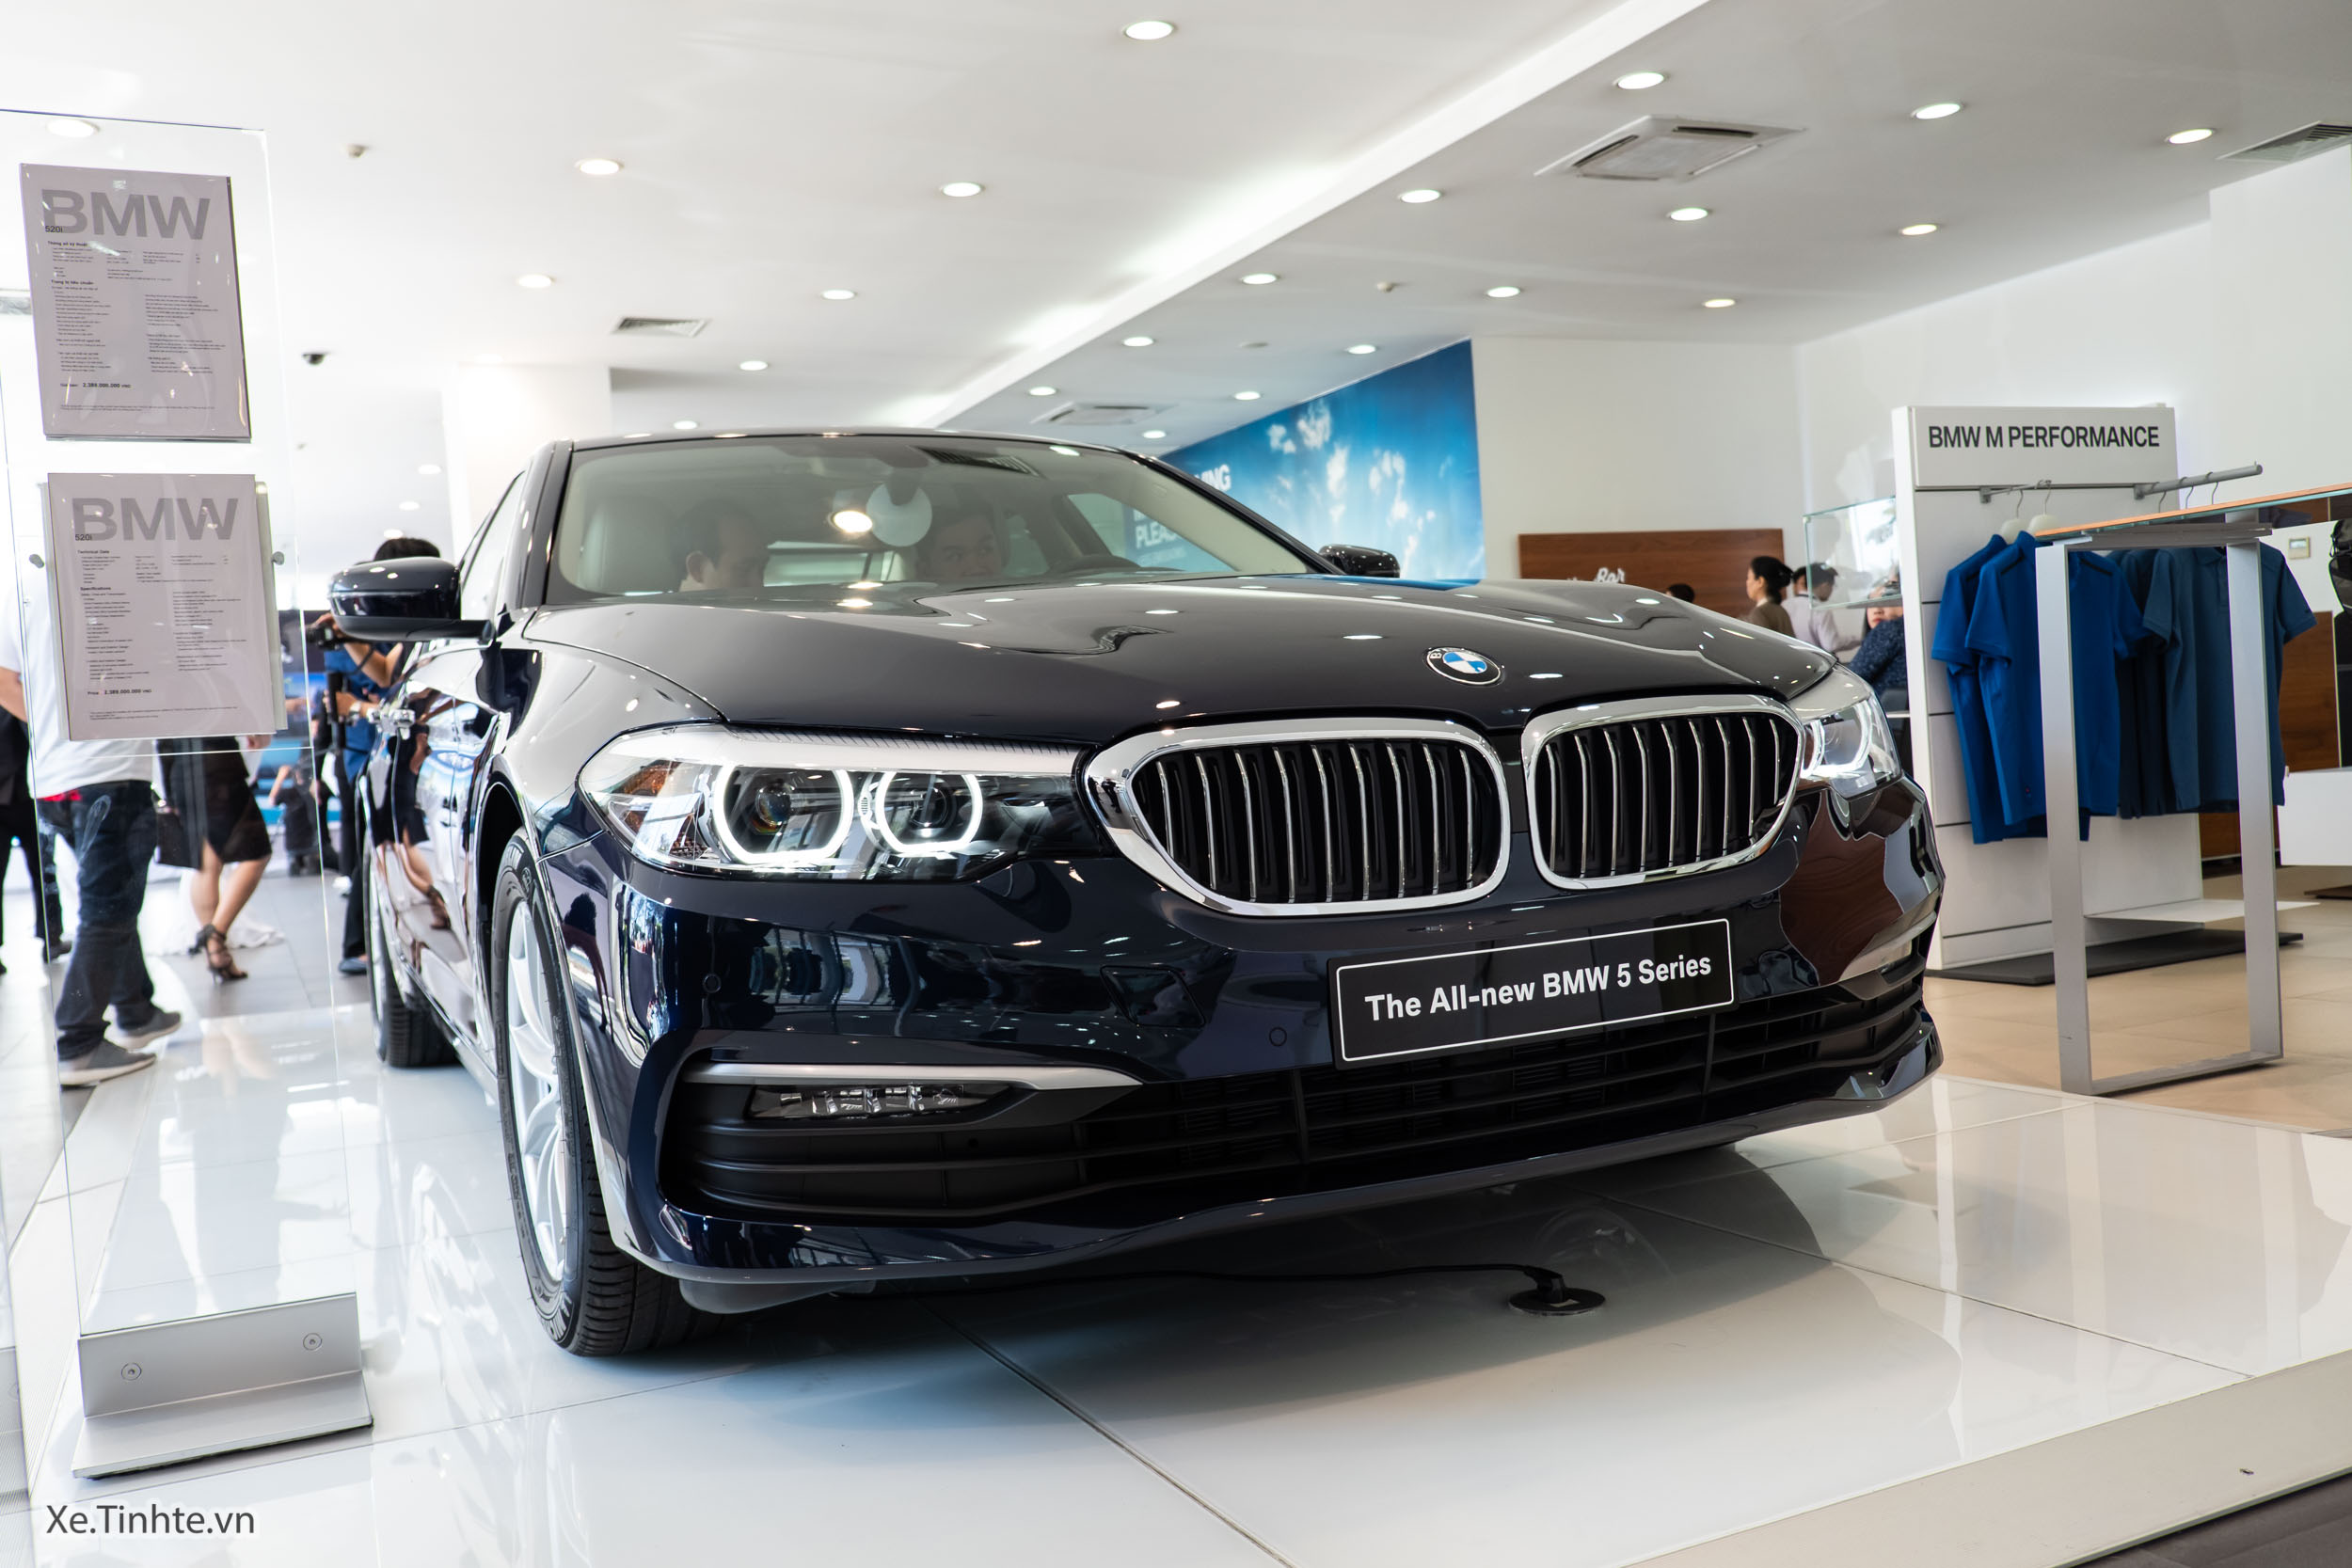 BMW_520i 2019_Xe.tinhte.vn-0586.jpg